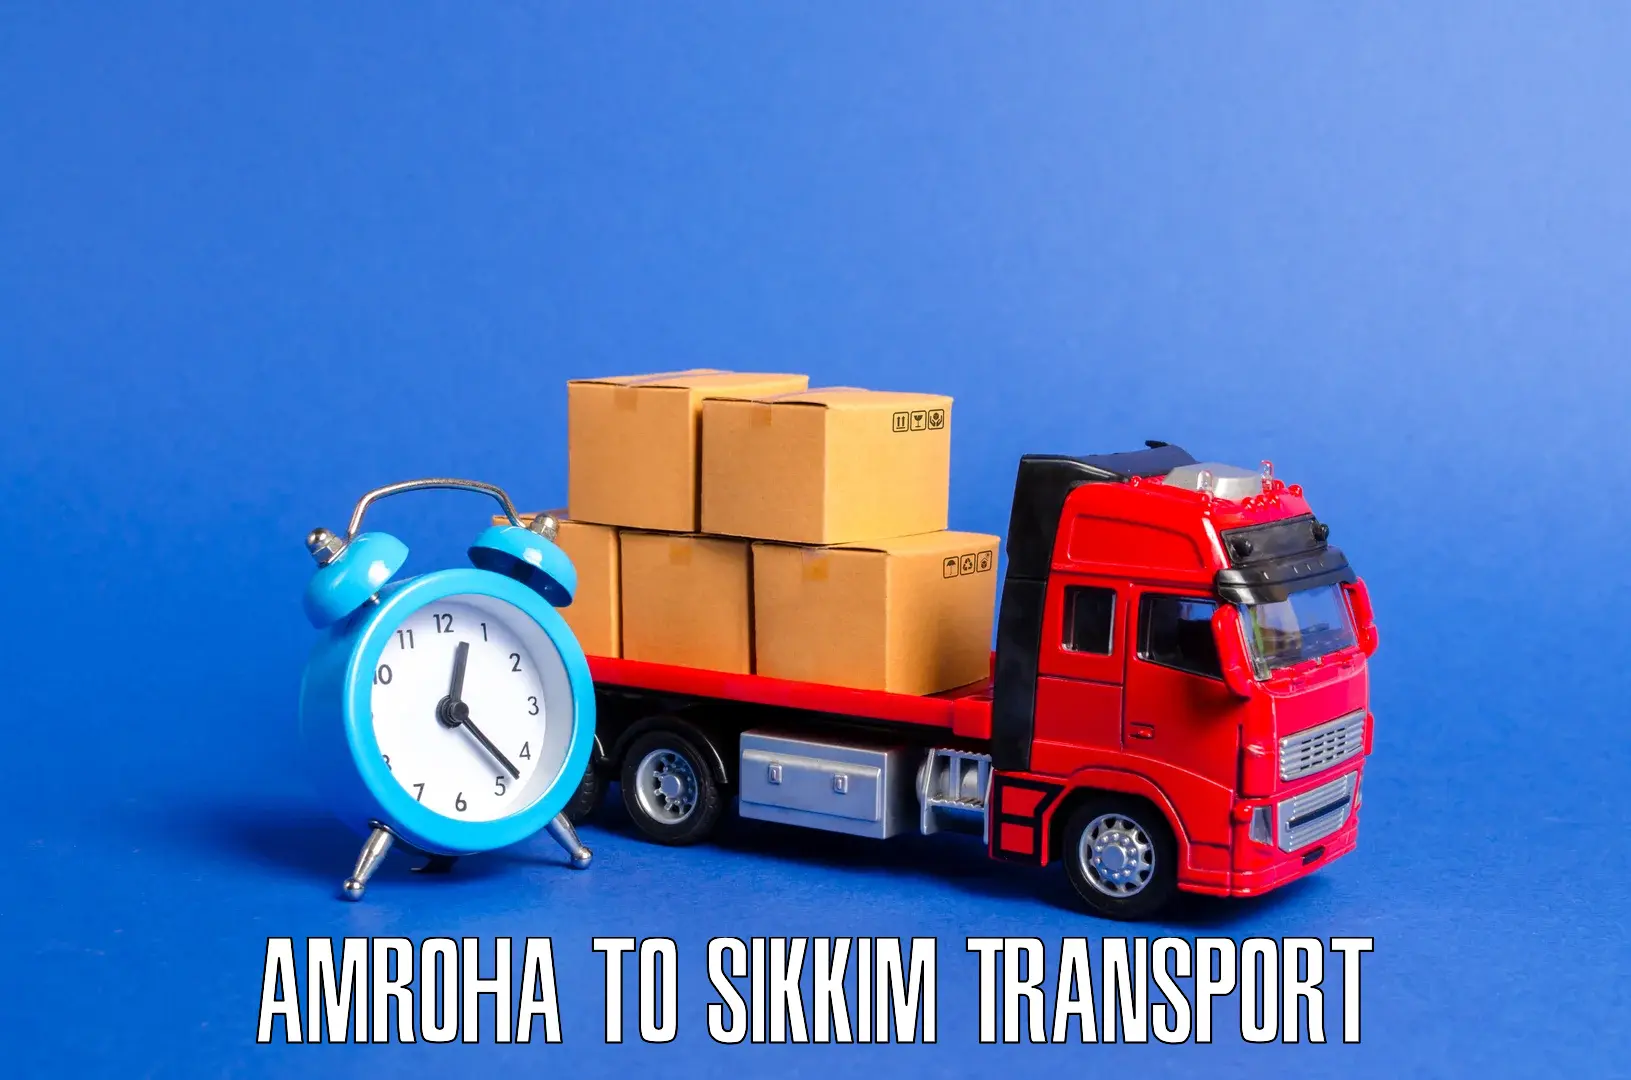 Lorry transport service Amroha to Rongli